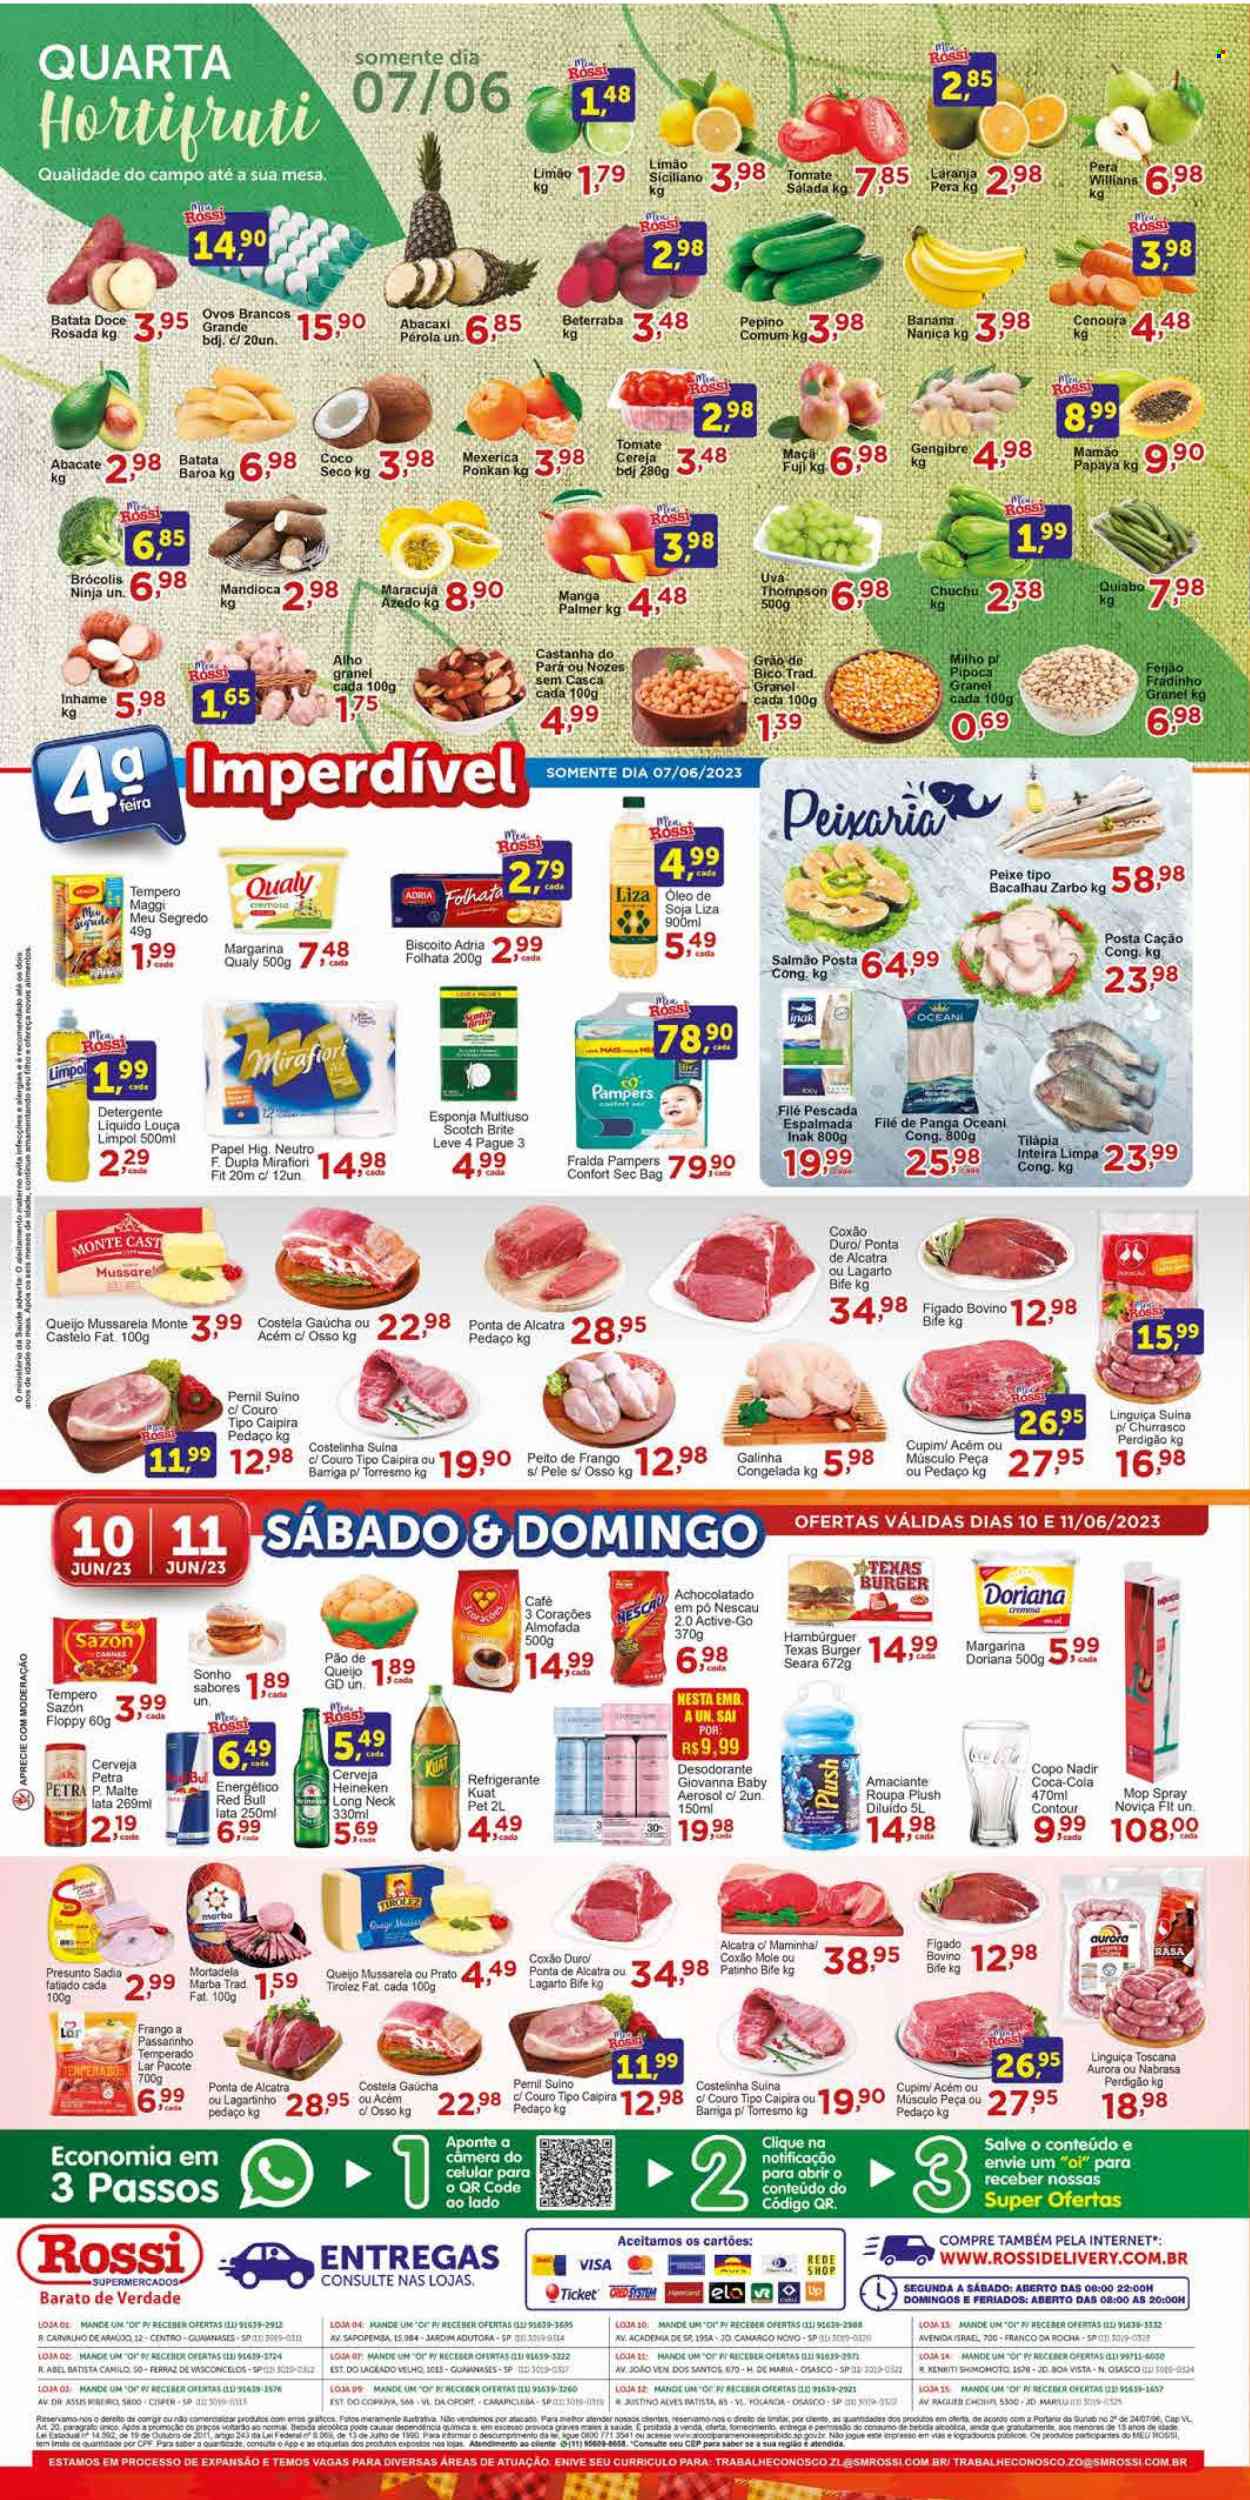 Encarte Rossi Supermercados  - 07.06.2023 - 13.06.2023.